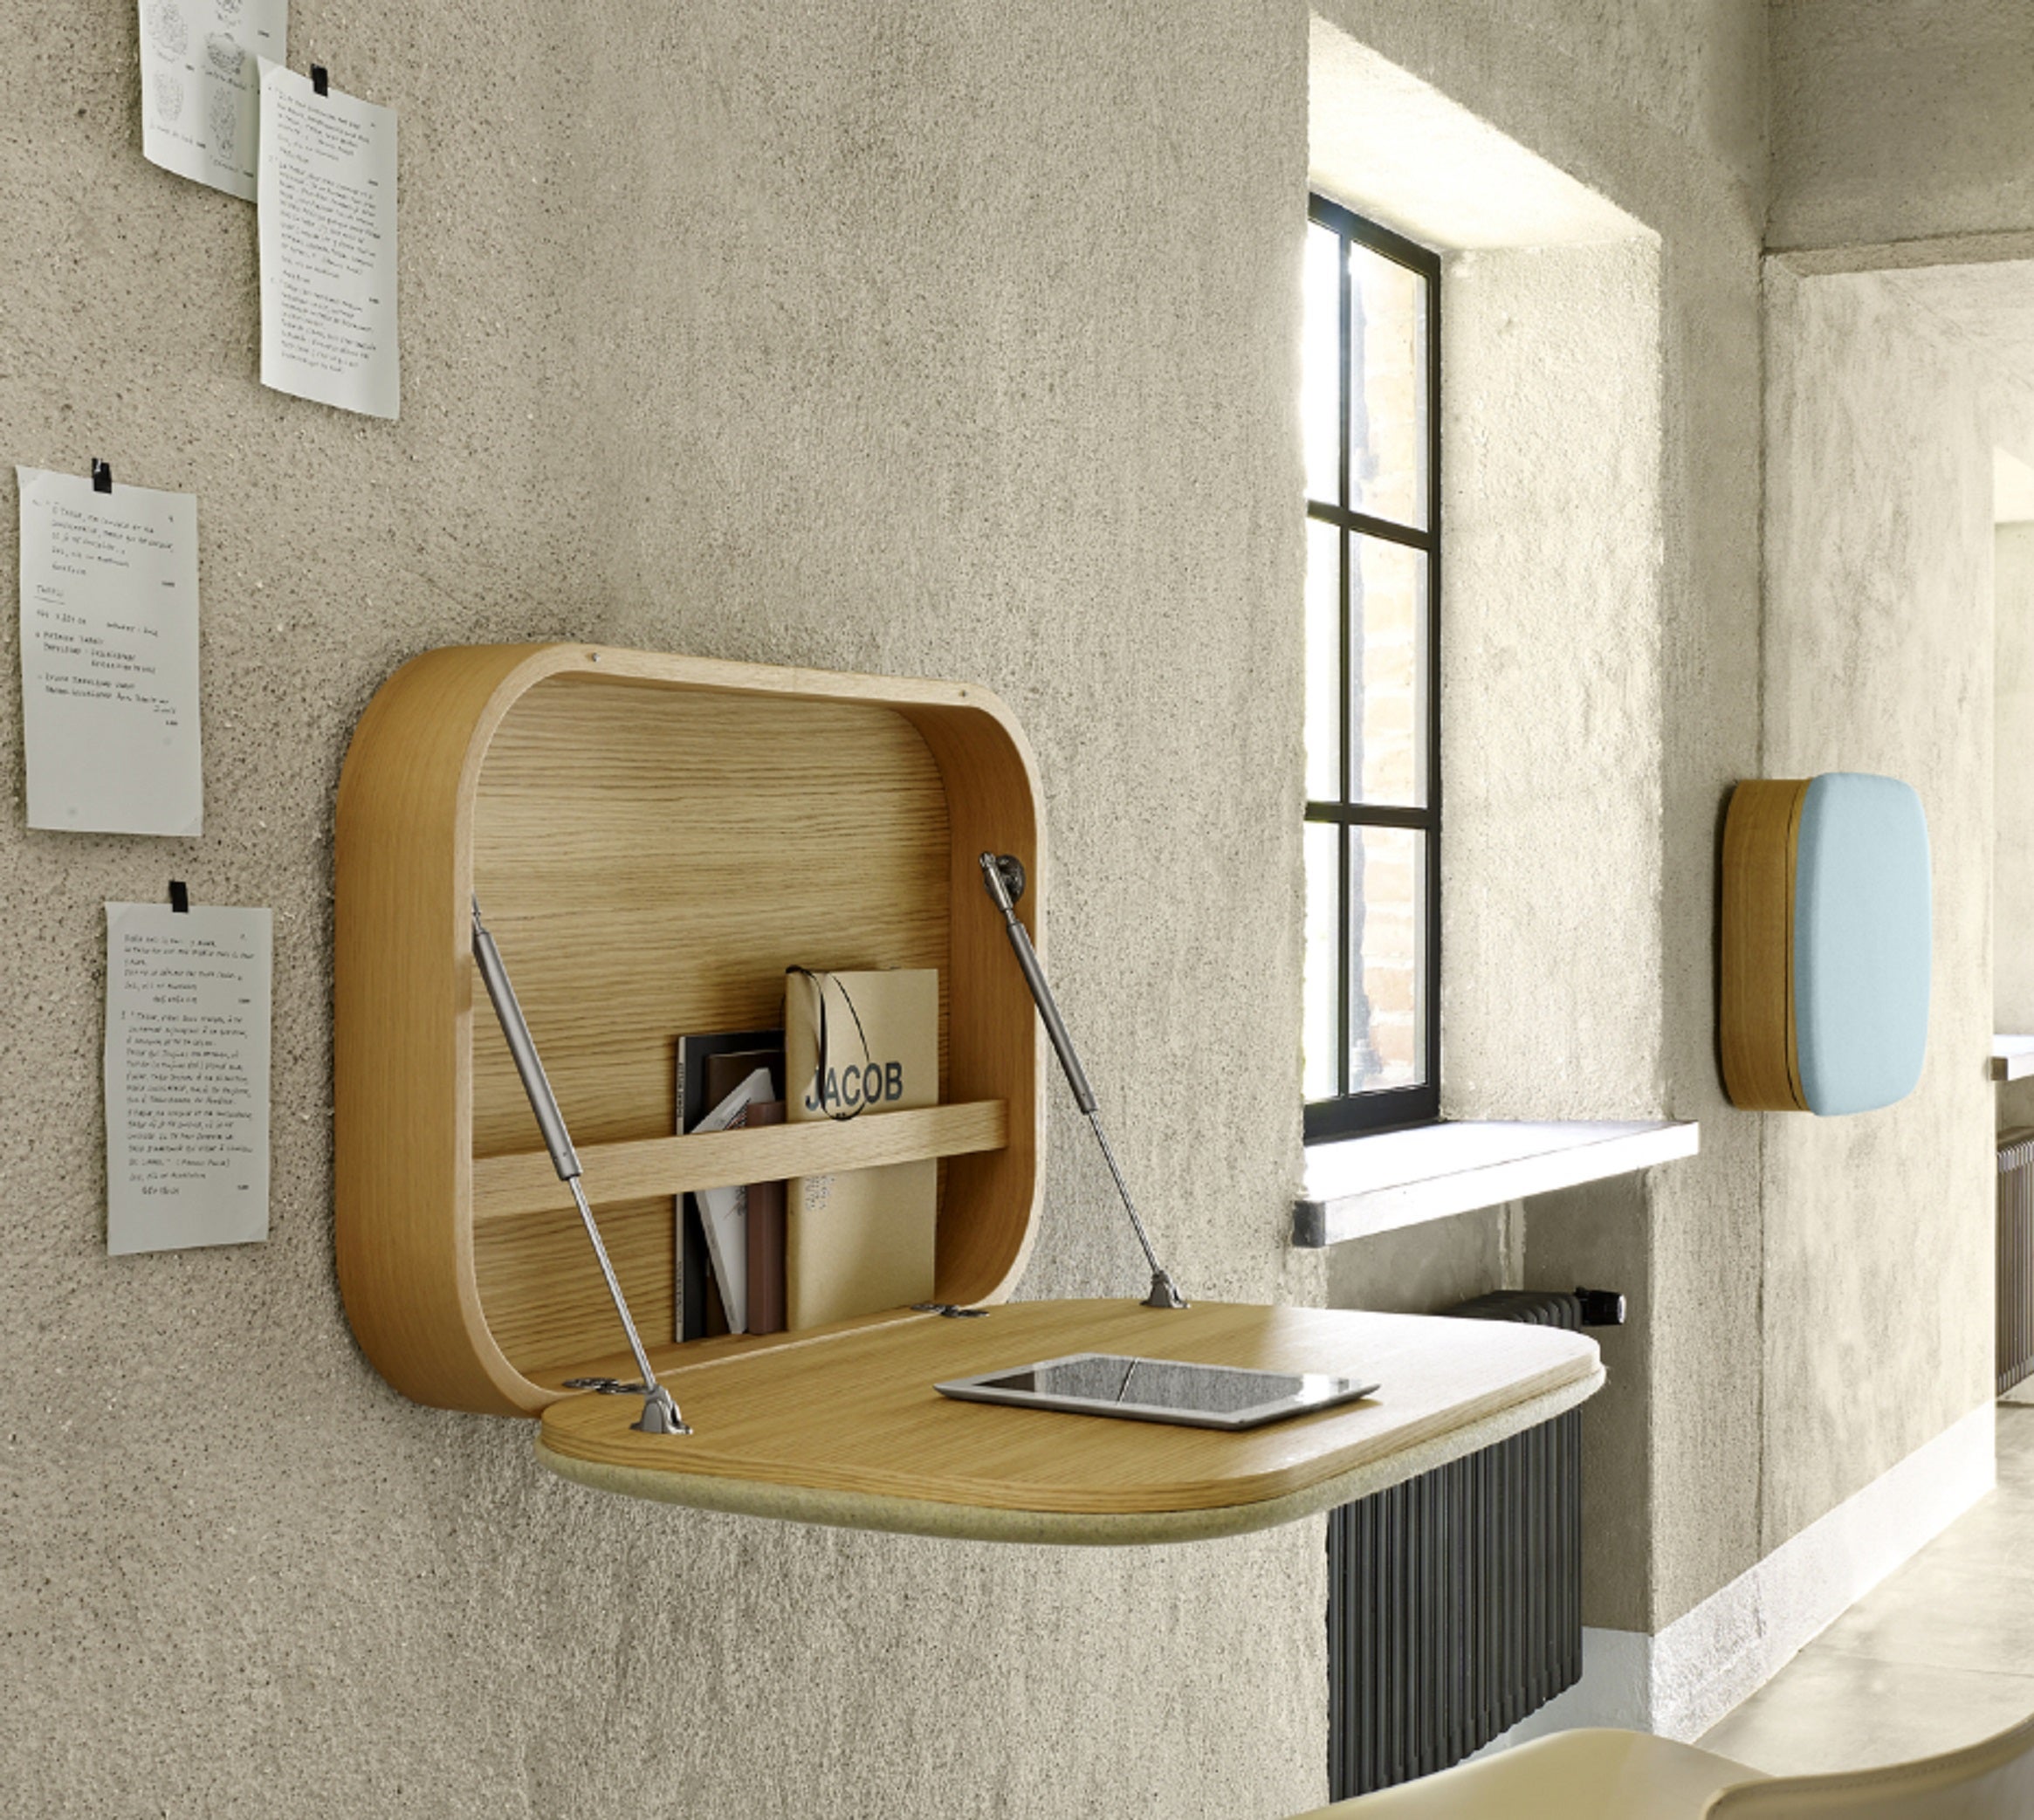 Nubo Desk, designed by GamFratesi for Ligne Roset